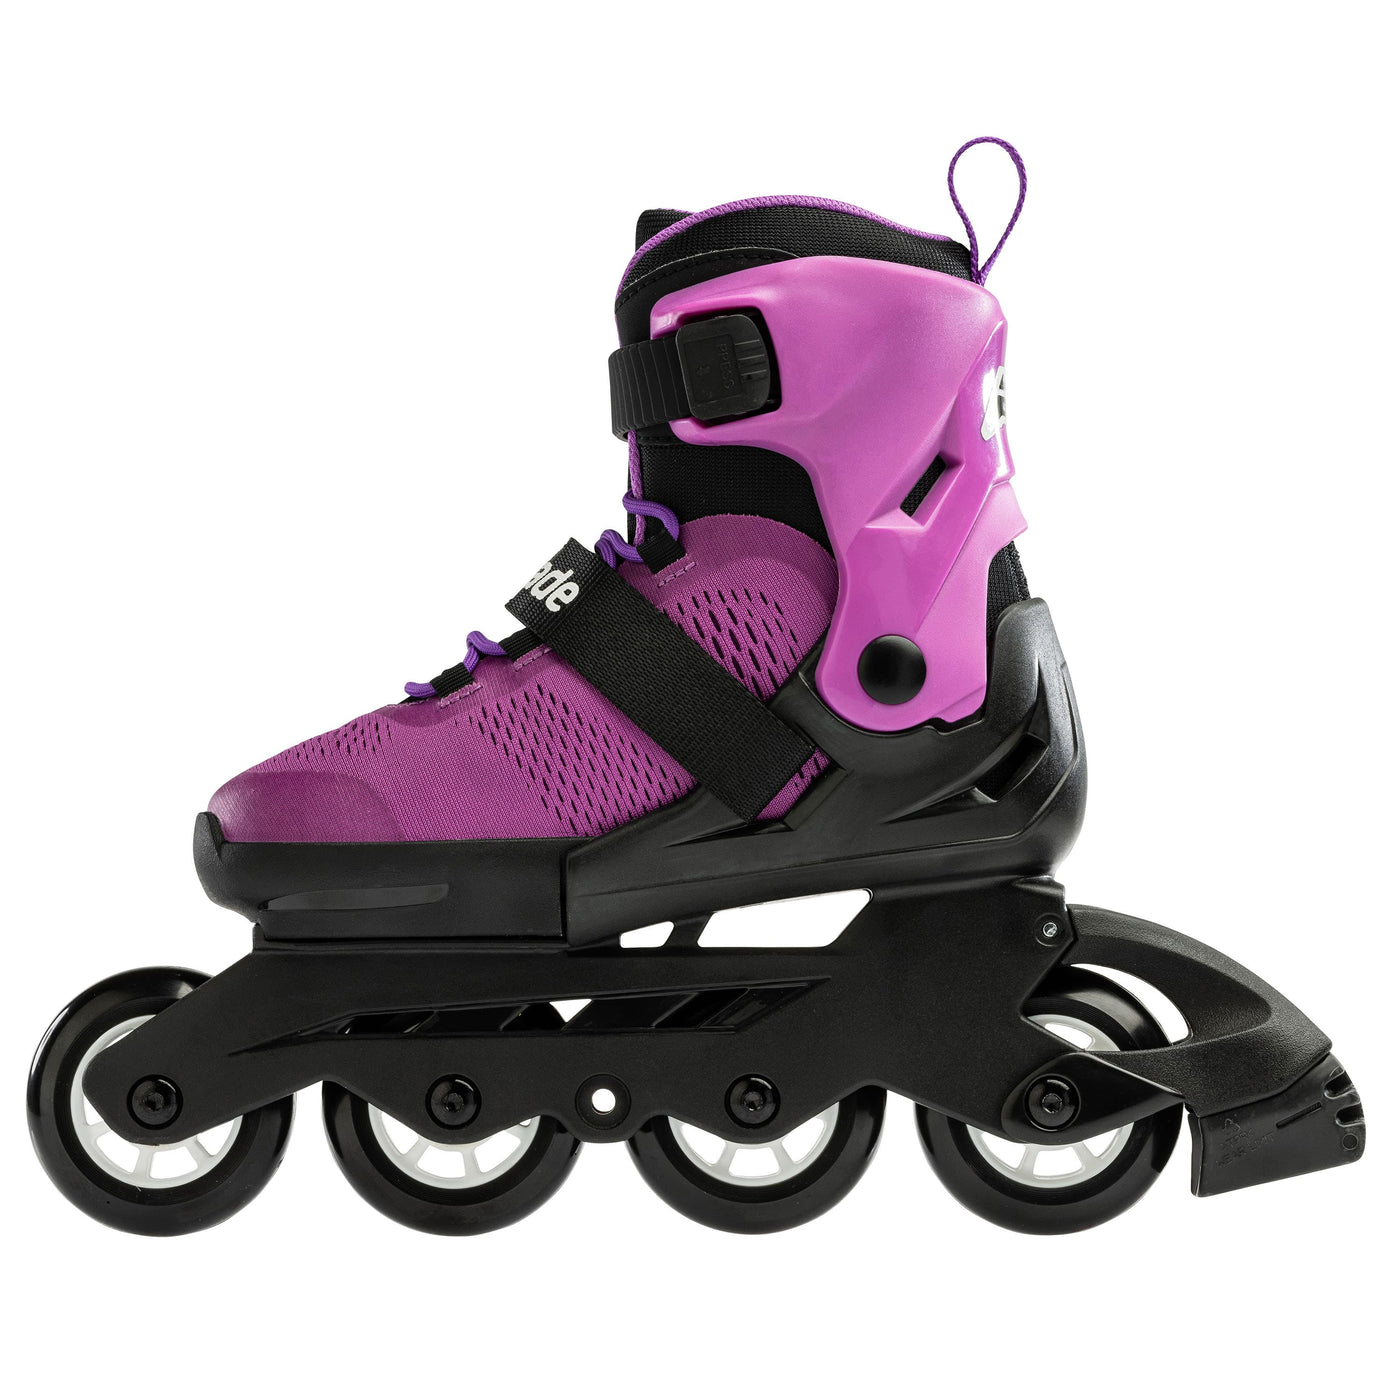 Rollerblade Microblade Adjustable Kids Skates - Purple/Black